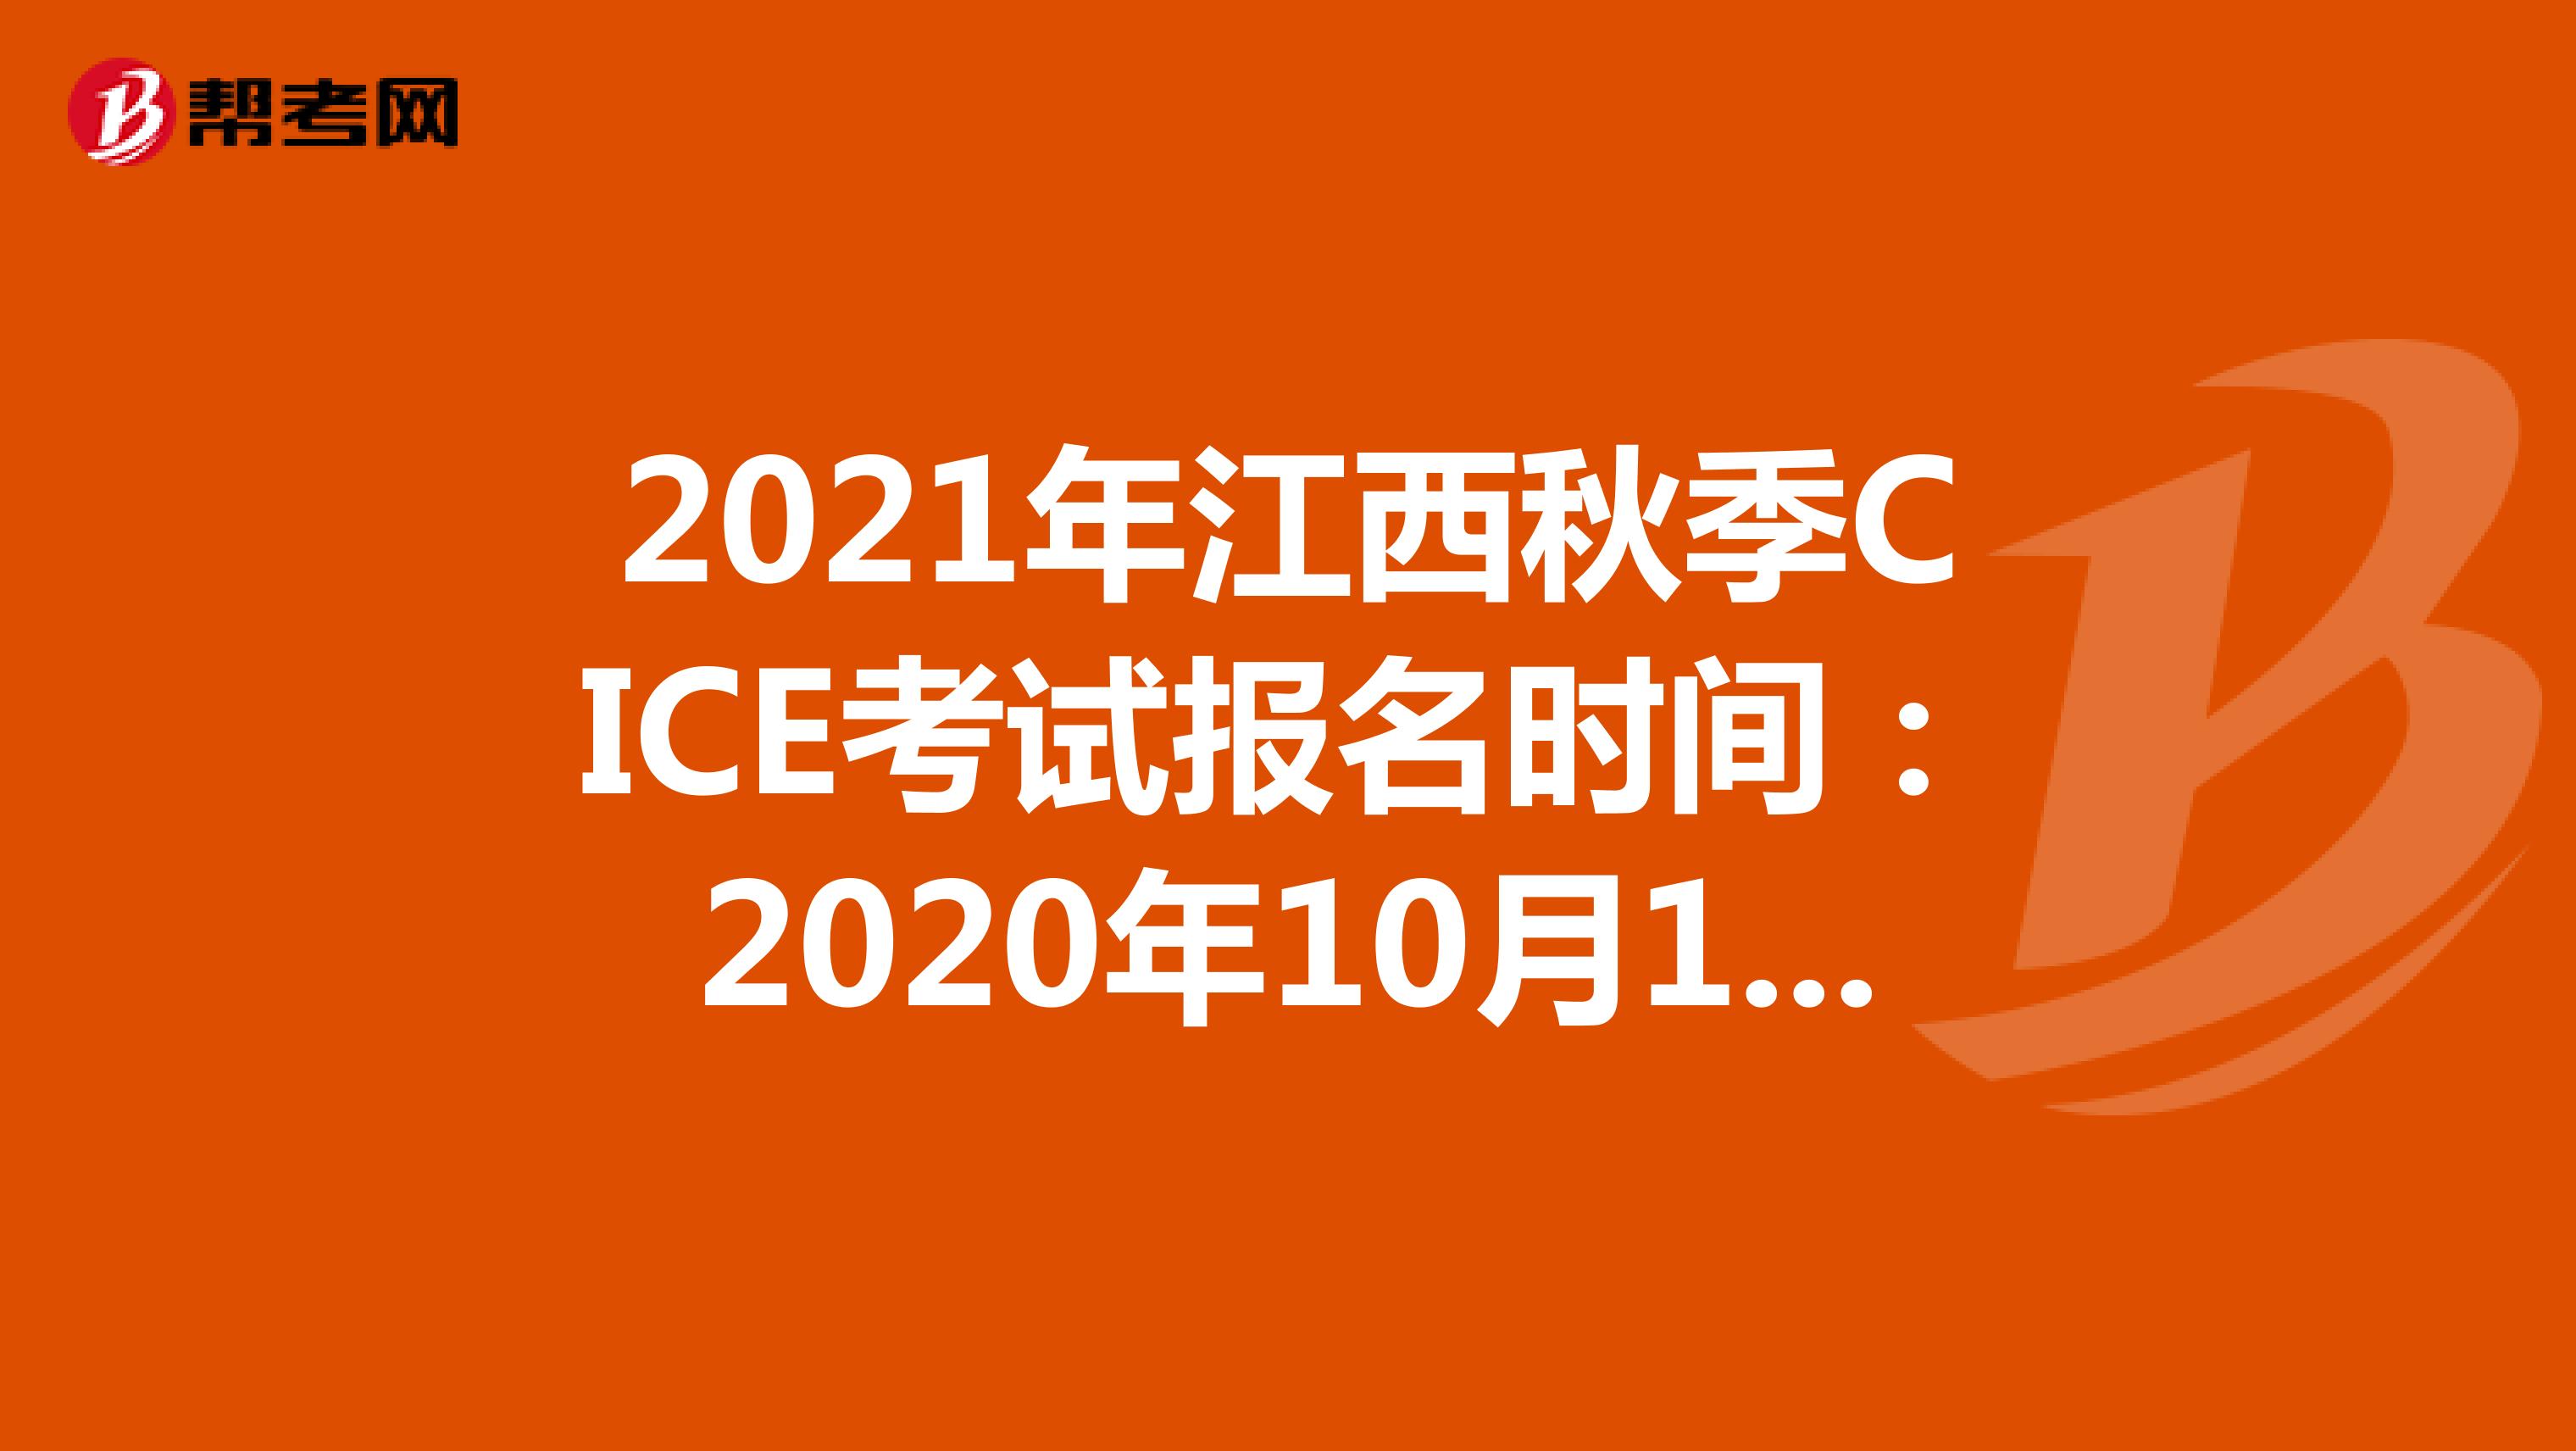 2021年江西秋季CICE考试报名时间：2020年10月19日-2021年8月31日